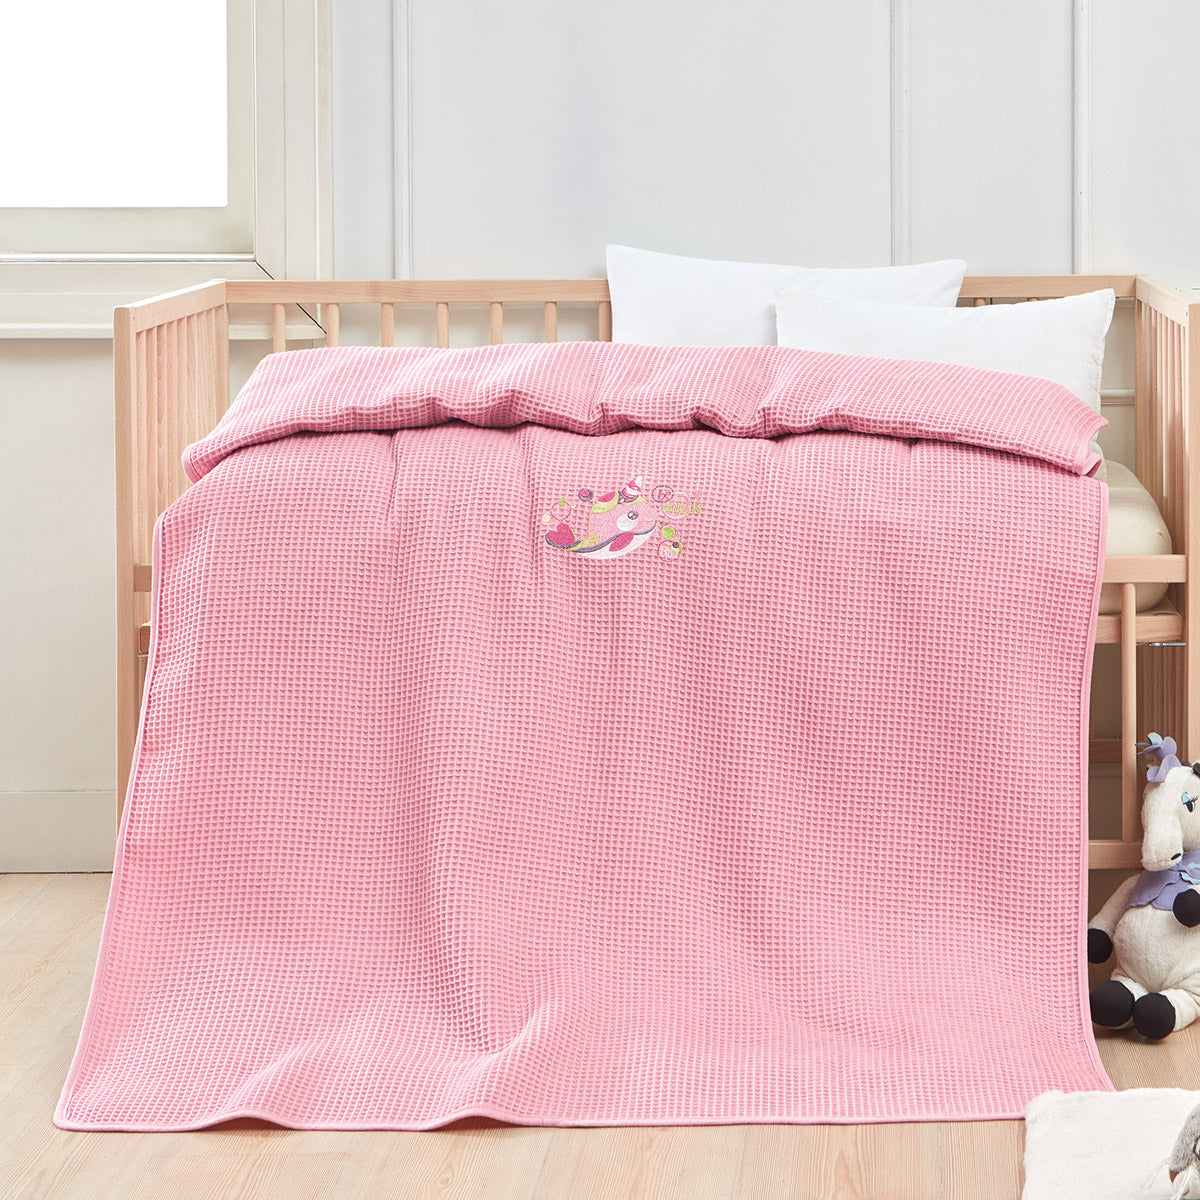 Κουβέρτα πικέ με κέντημα Art 5301 80x110 Ροζ Beauty Home Default Title από την εταιρεία Beauty Home